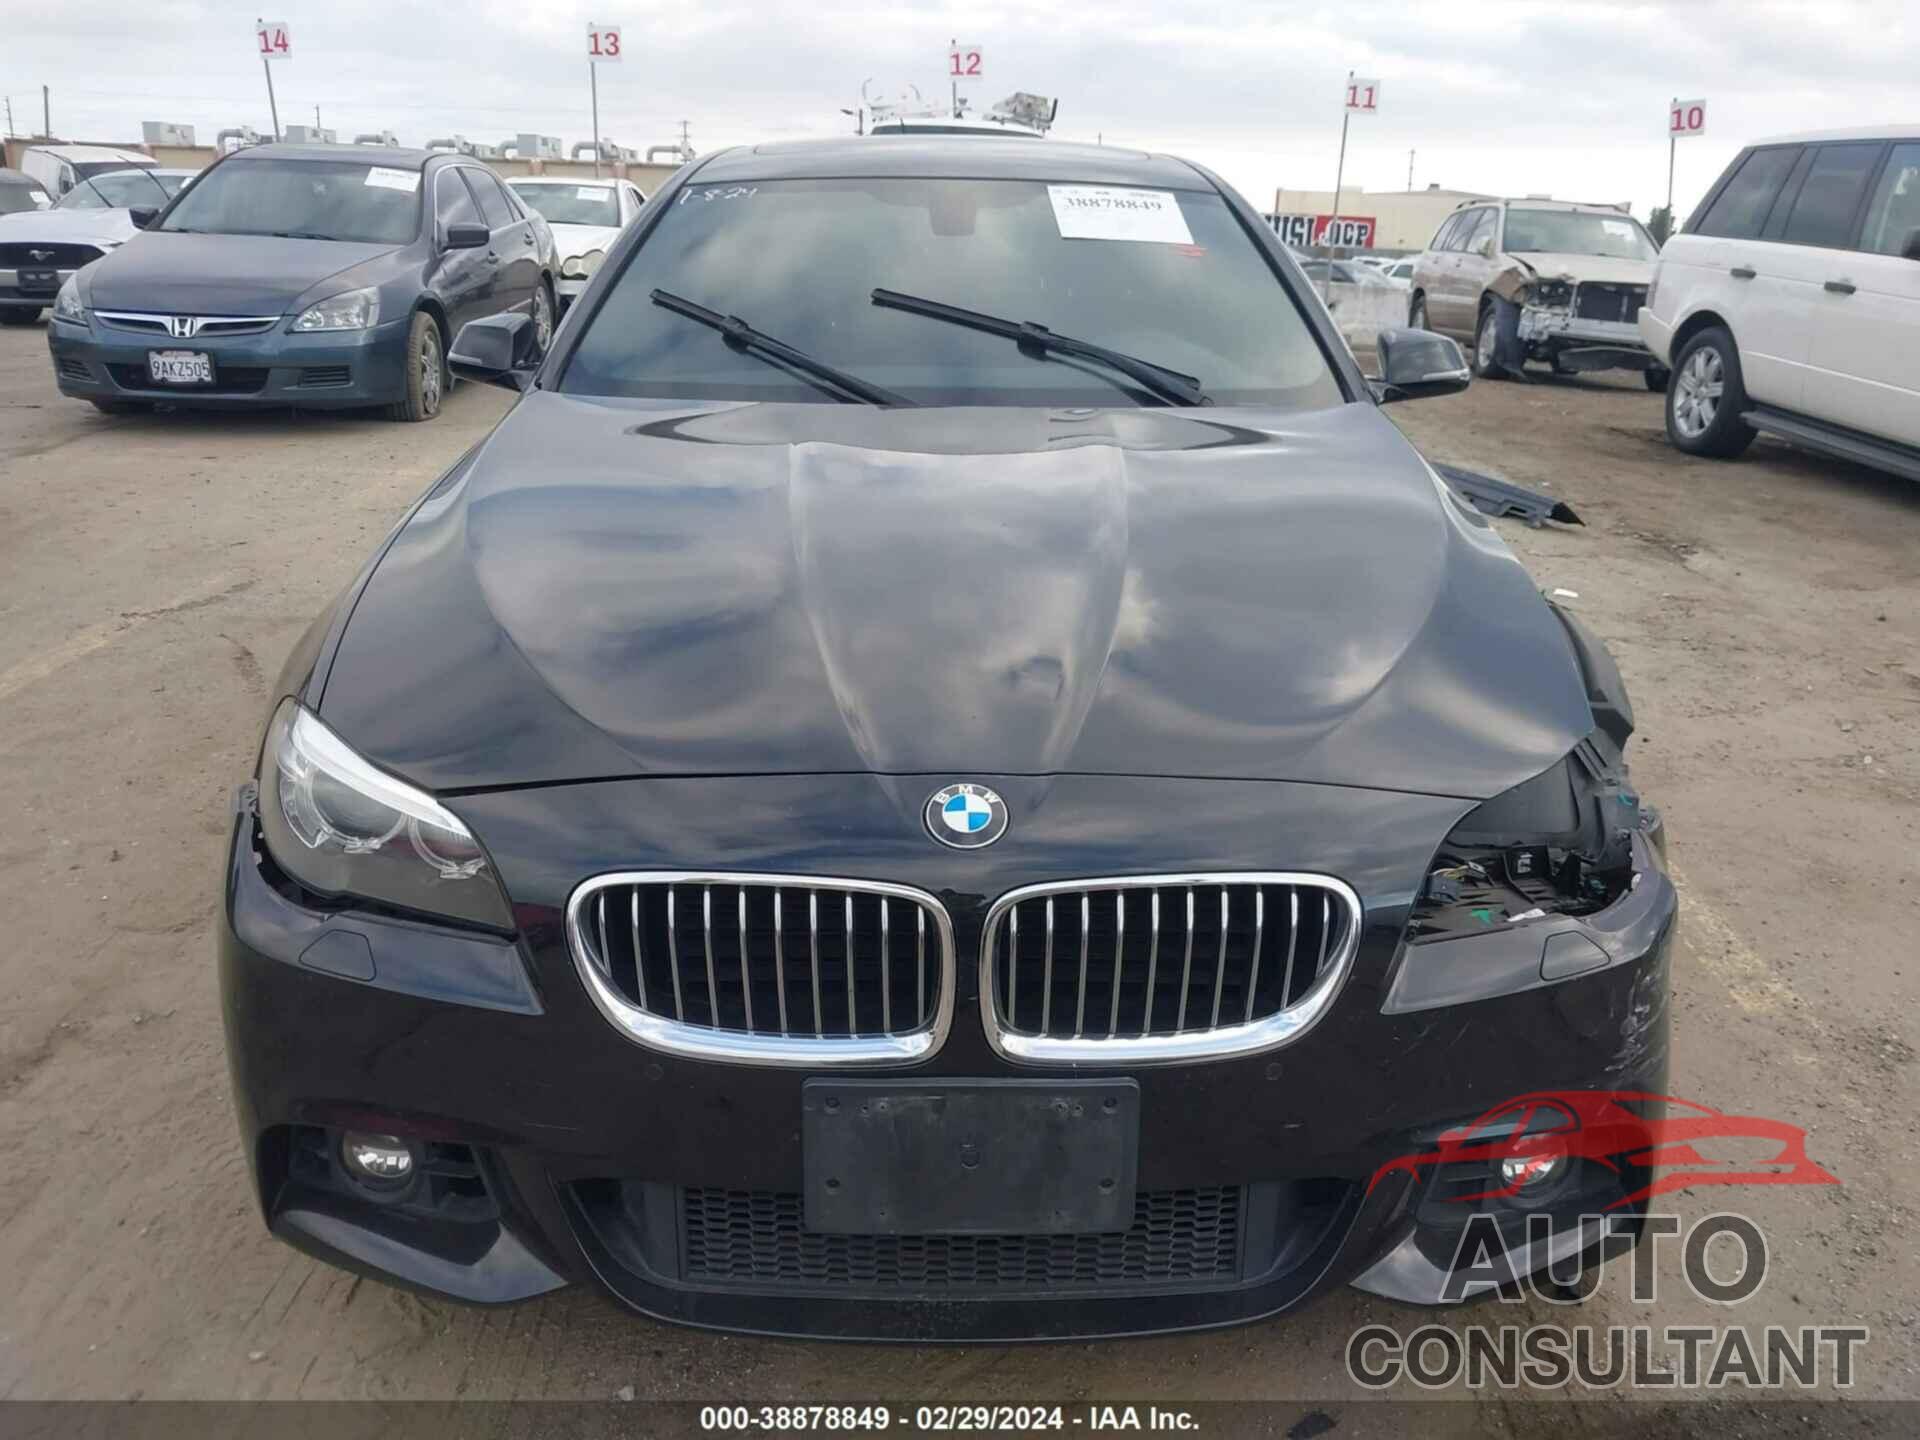 BMW 535D 2016 - WBAXA5C51GG042384